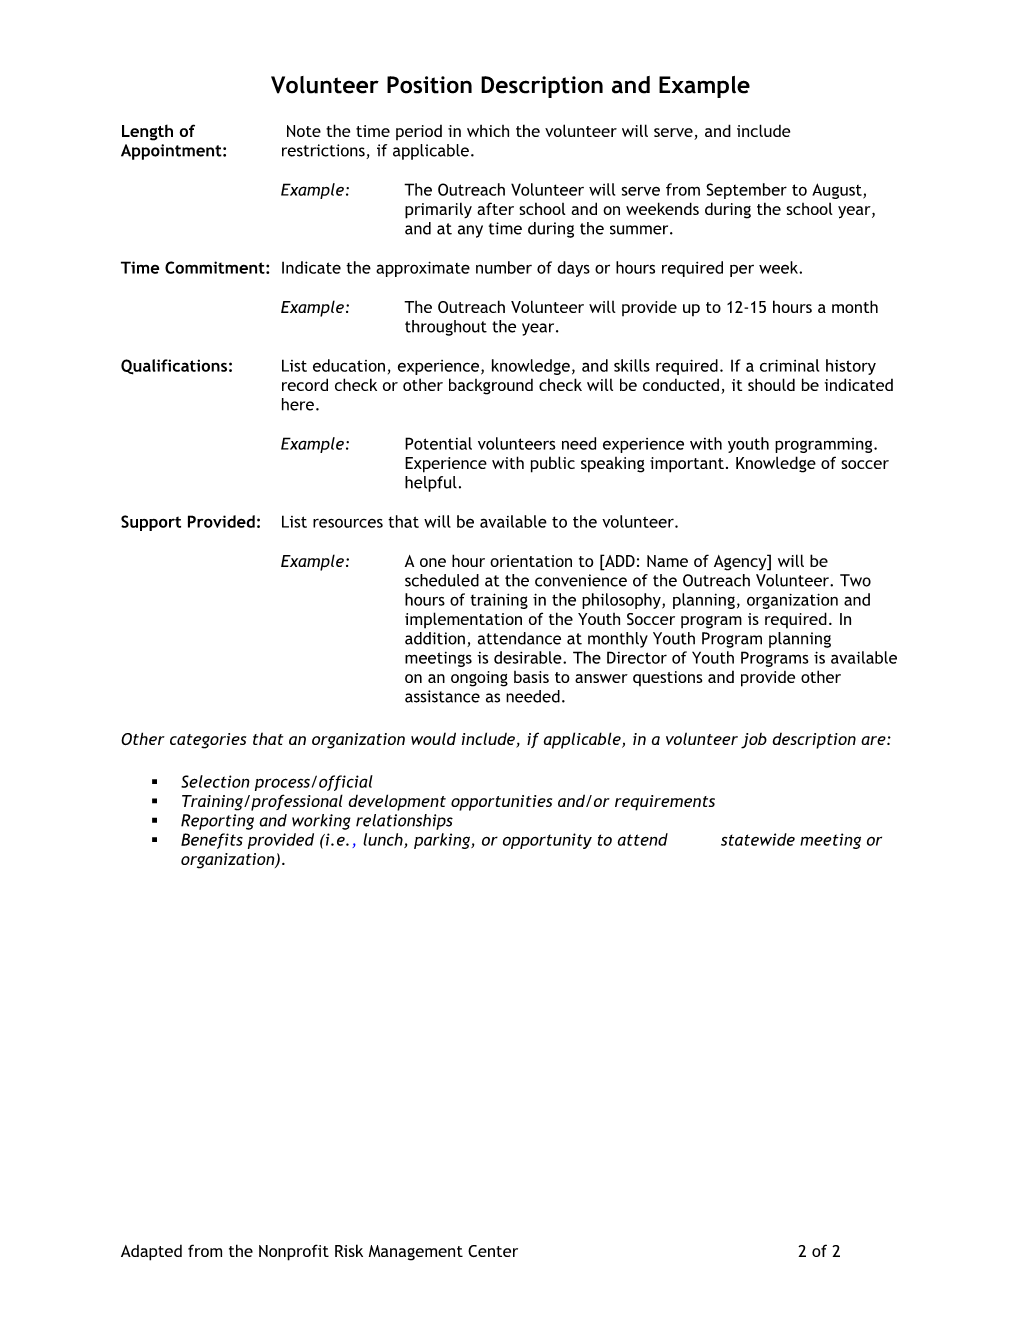 Volunteer Position Description Worksheet and Sample